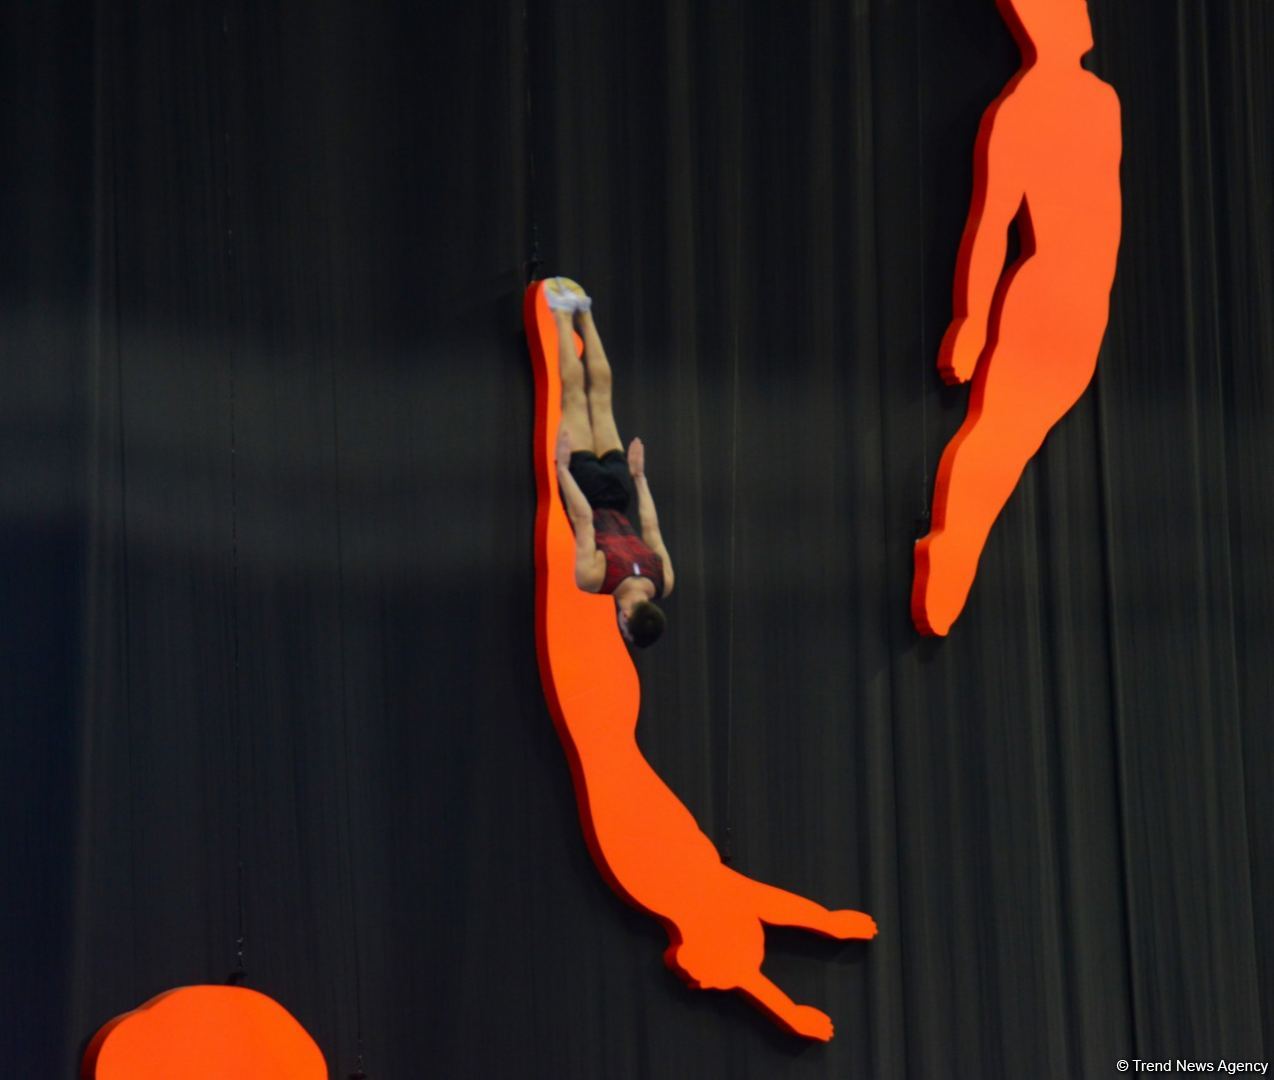 Захватывающие выступления и интригующая борьба - лучшие моменты первого дня чемпионата мира по прыжкам на батуте в Баку (ФОТО)